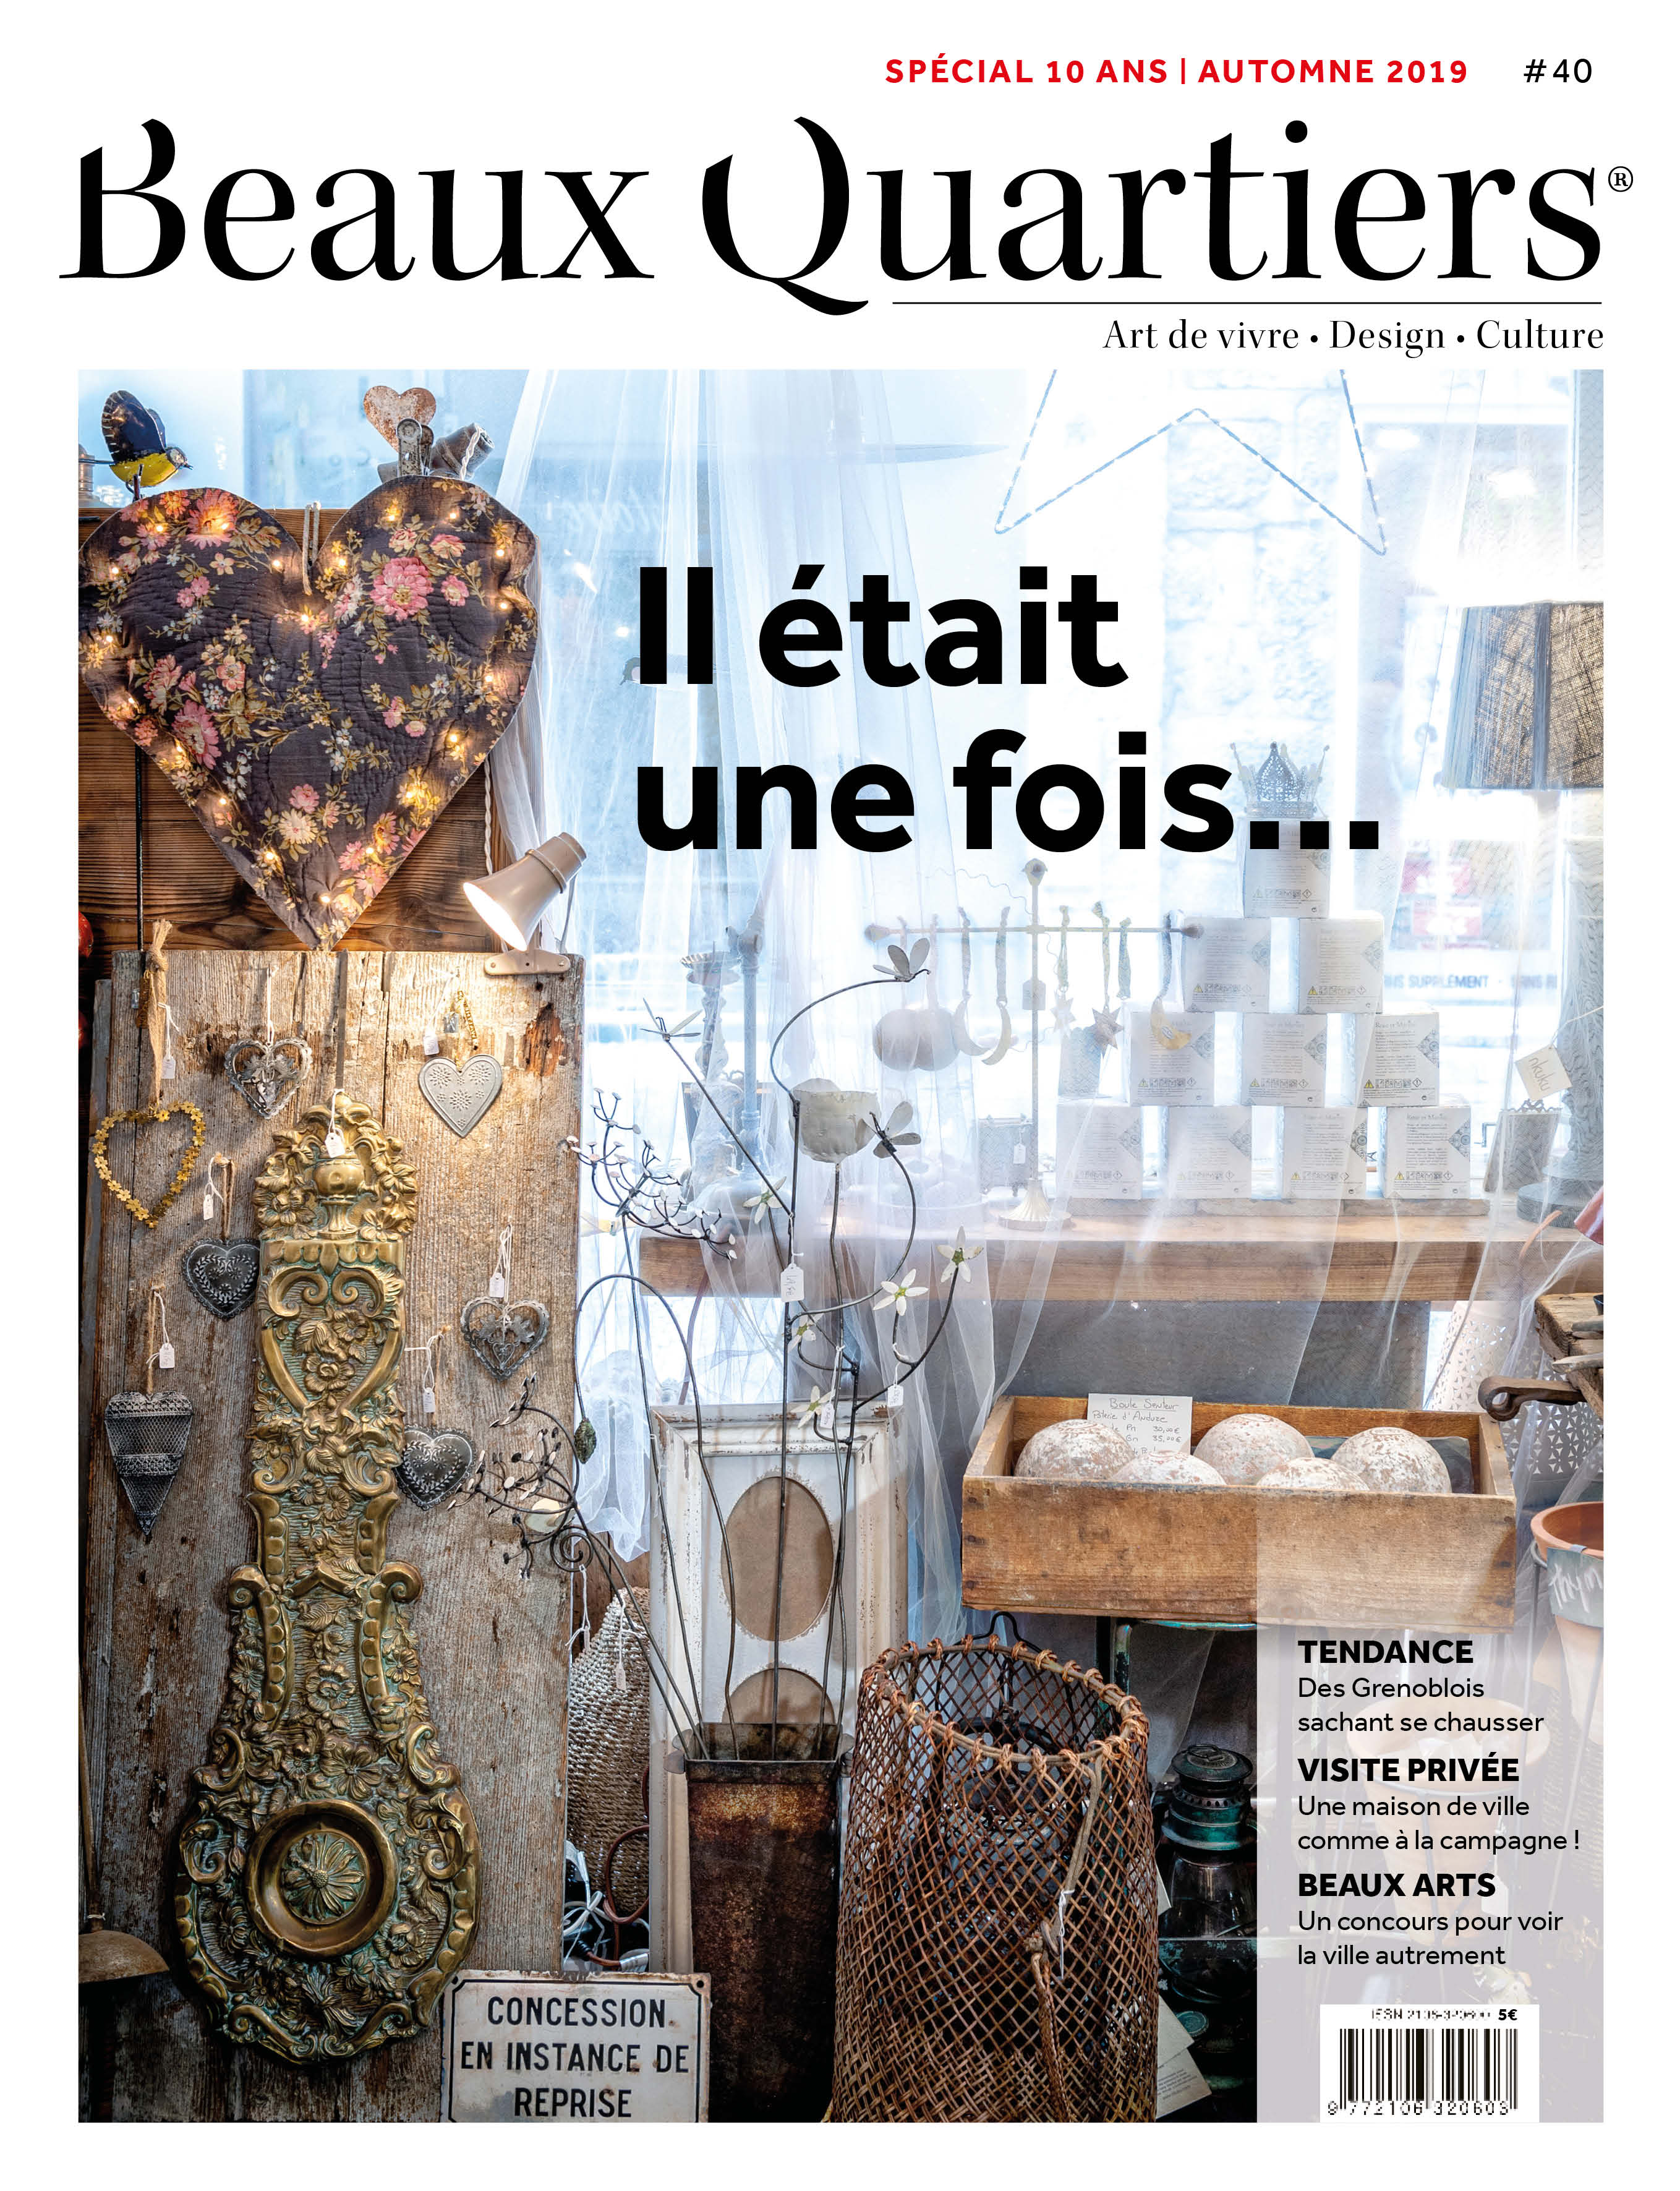 Beaux Quartiers 40 – Automne 2019